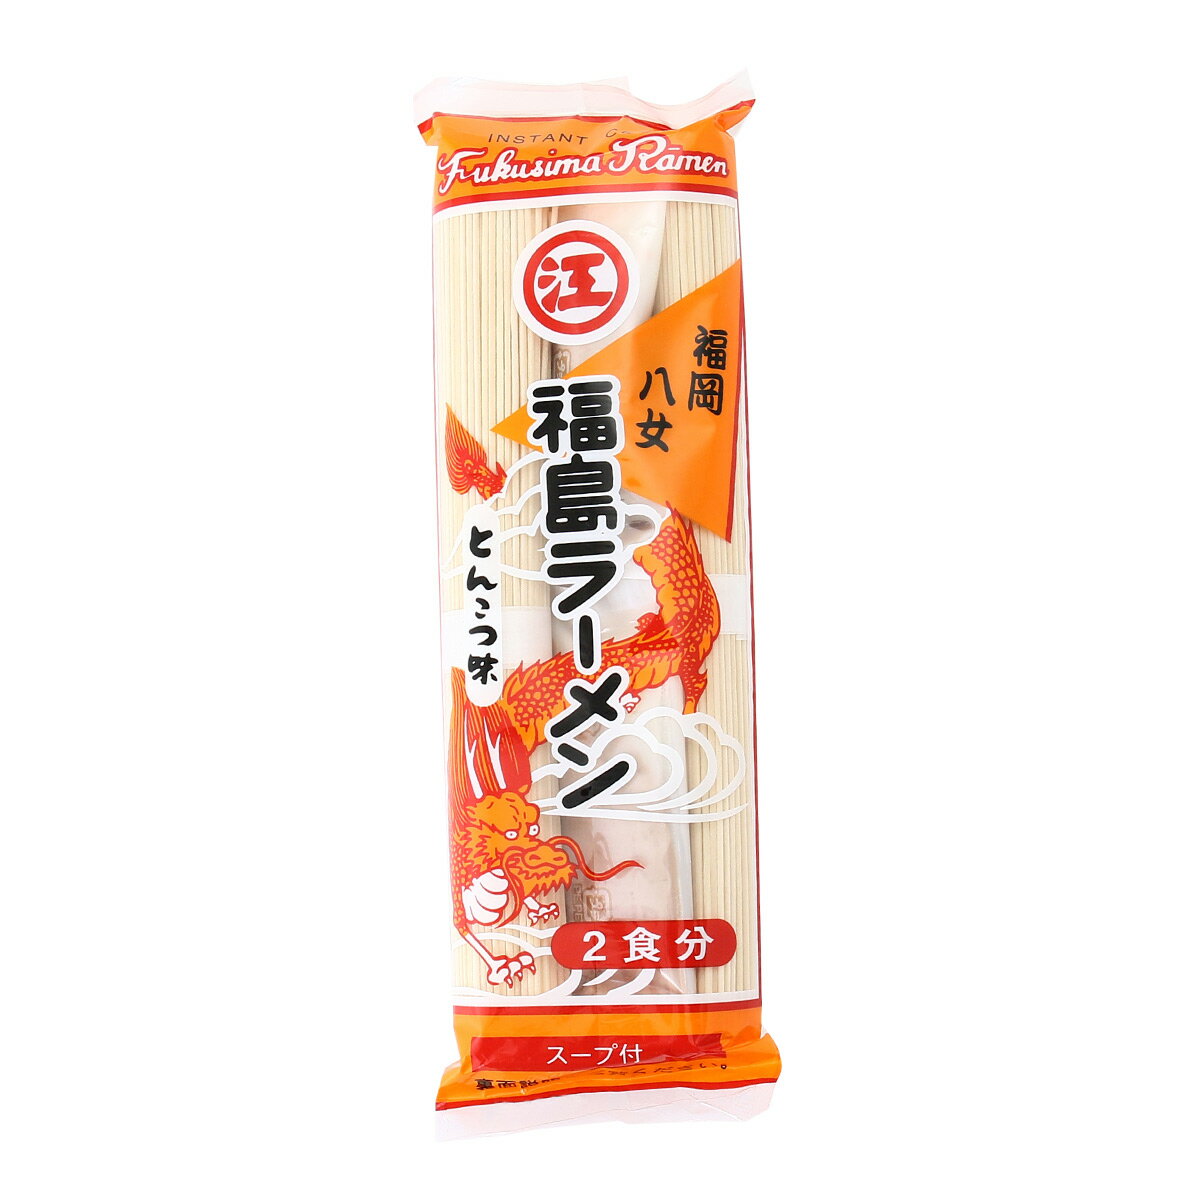 [江崎製麺] ラーメン 福島ラーメン とんこつ味 208g(